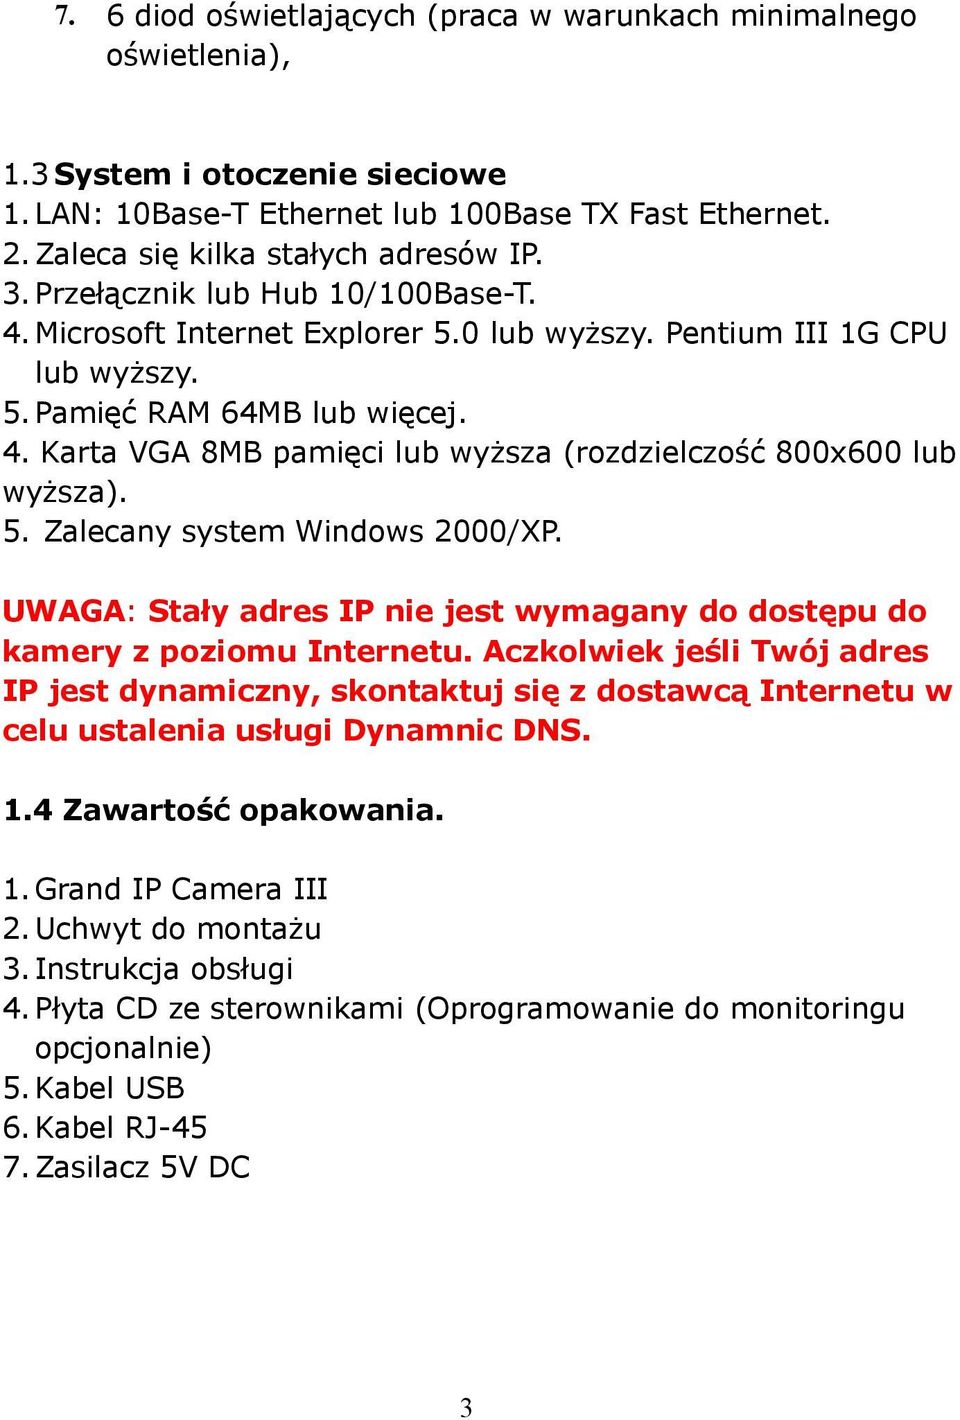 5. Zalecany system Windows 2000/XP. UWAGA: Stały adres IP nie jest wymagany do dostępu do kamery z poziomu Internetu.